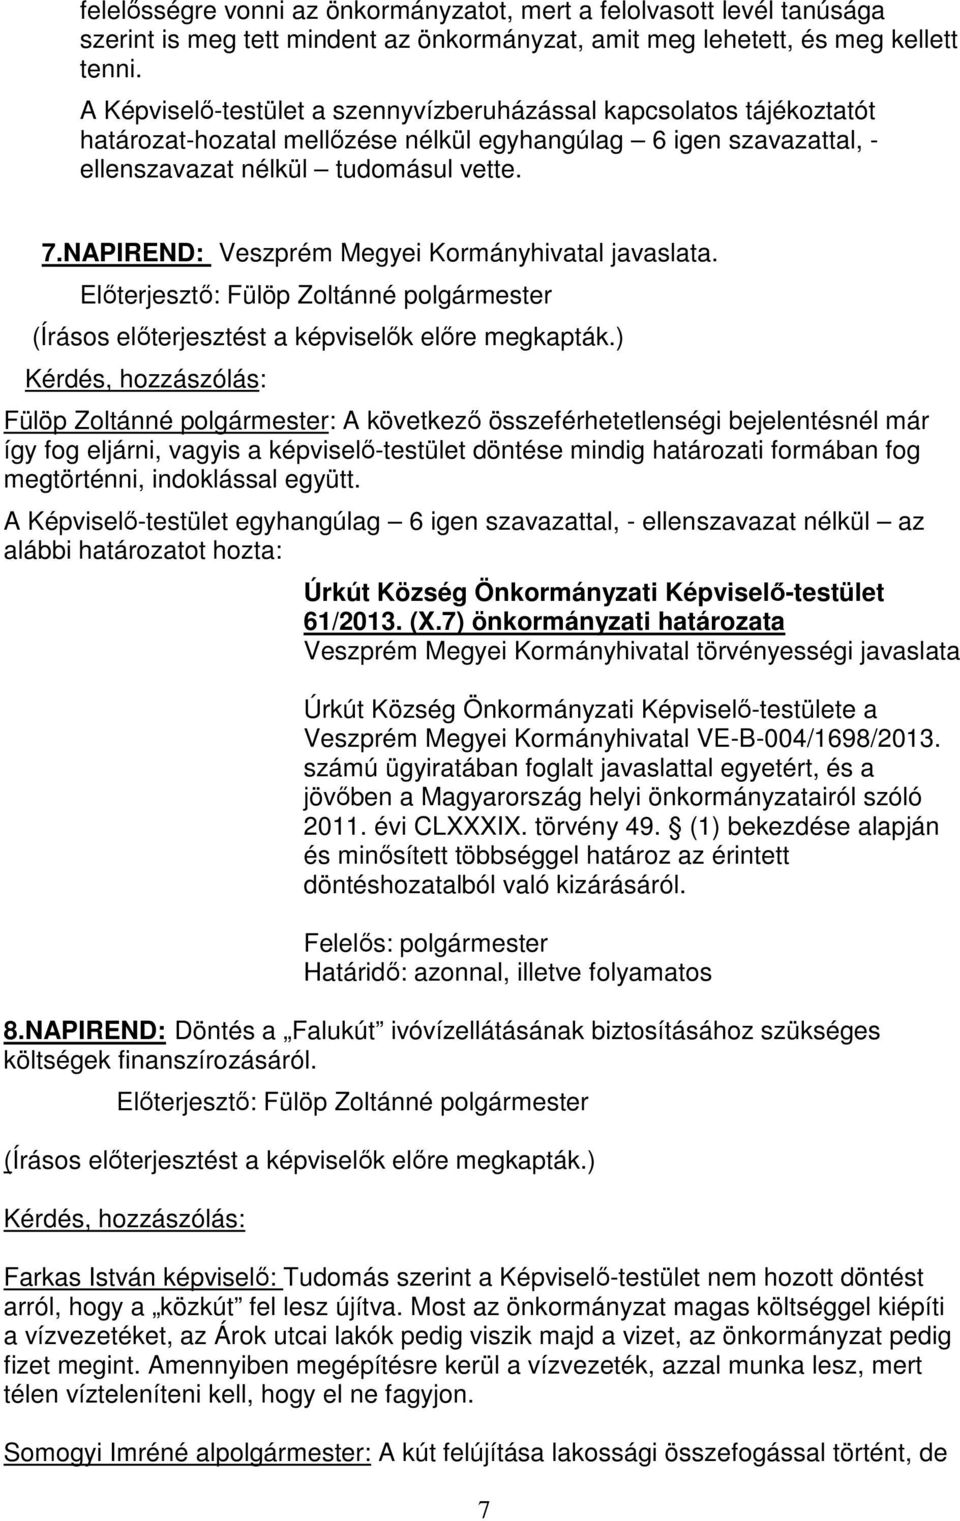 NAPIREND: Veszprém Megyei Kormányhivatal javaslata.